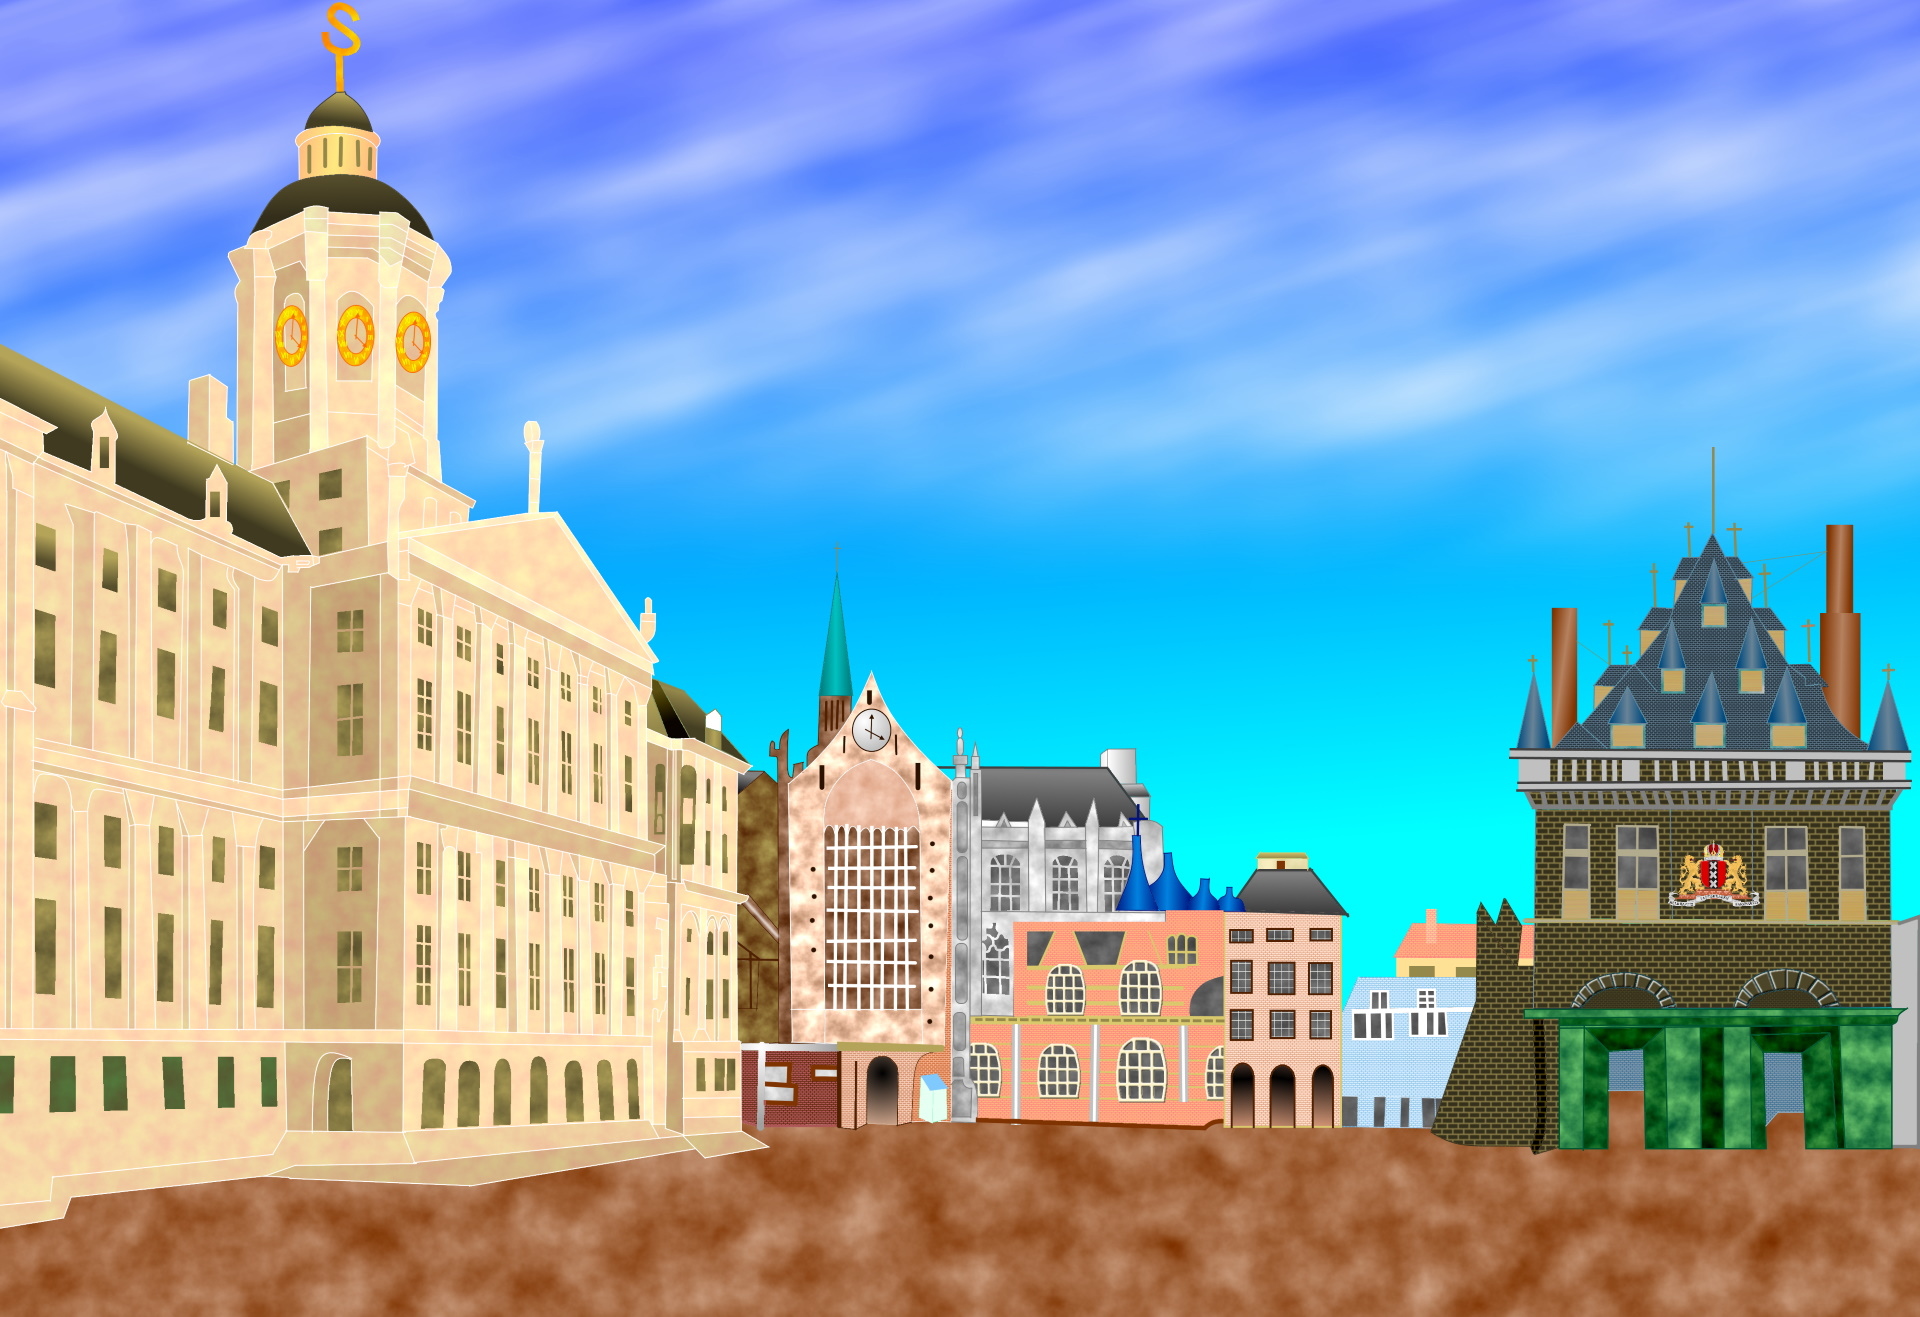 イラスト 絵画 広場と王宮 アムステルダム1814 壁紙19x1317 壁紙館